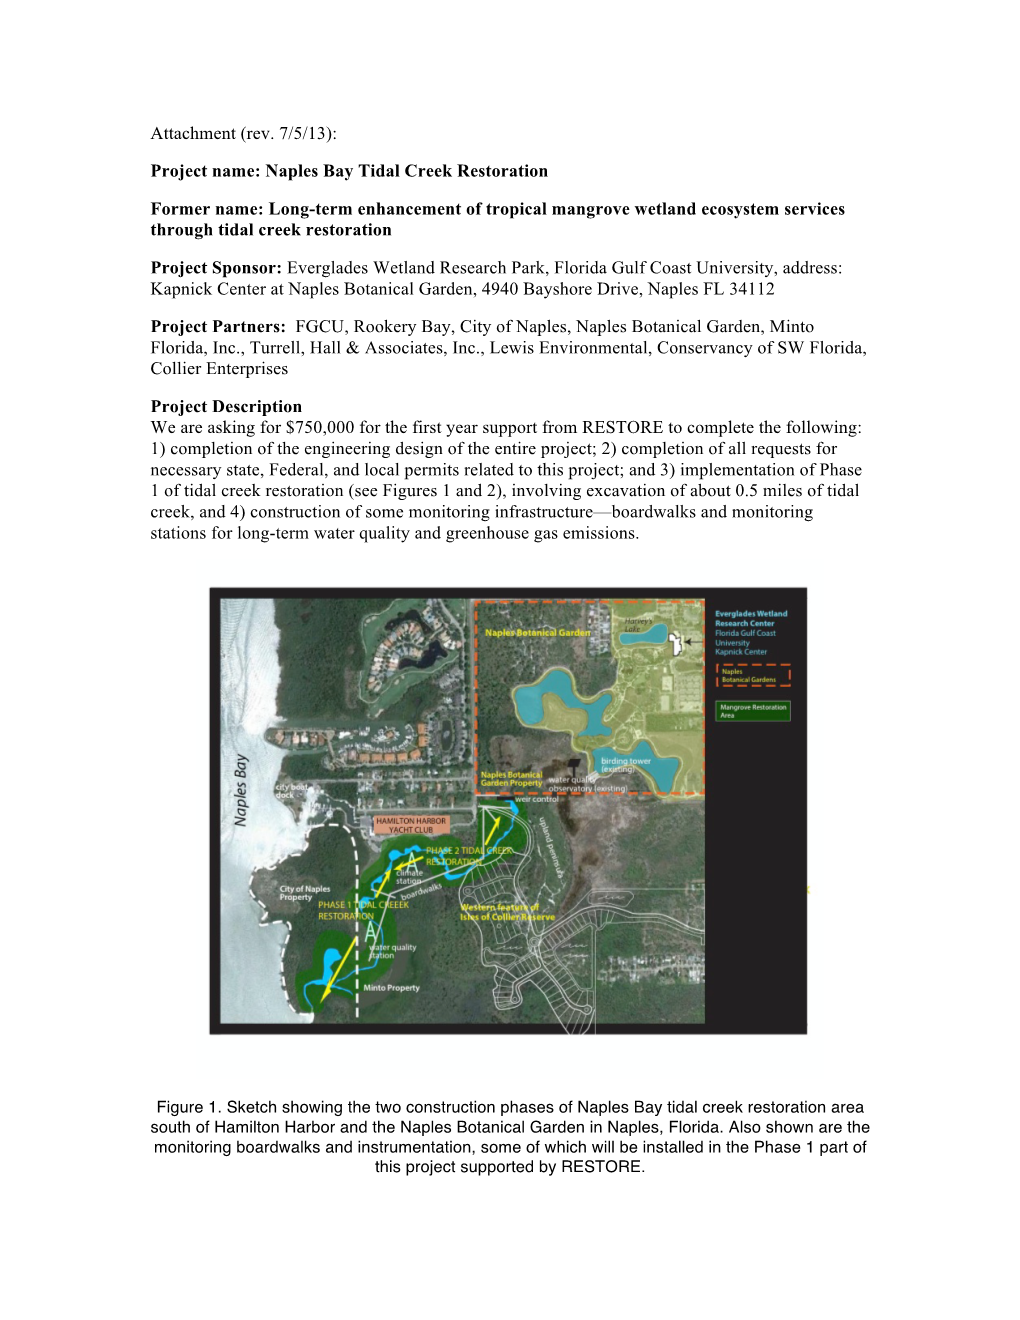 Naples Bay Tidal Creek Restoration Project Description